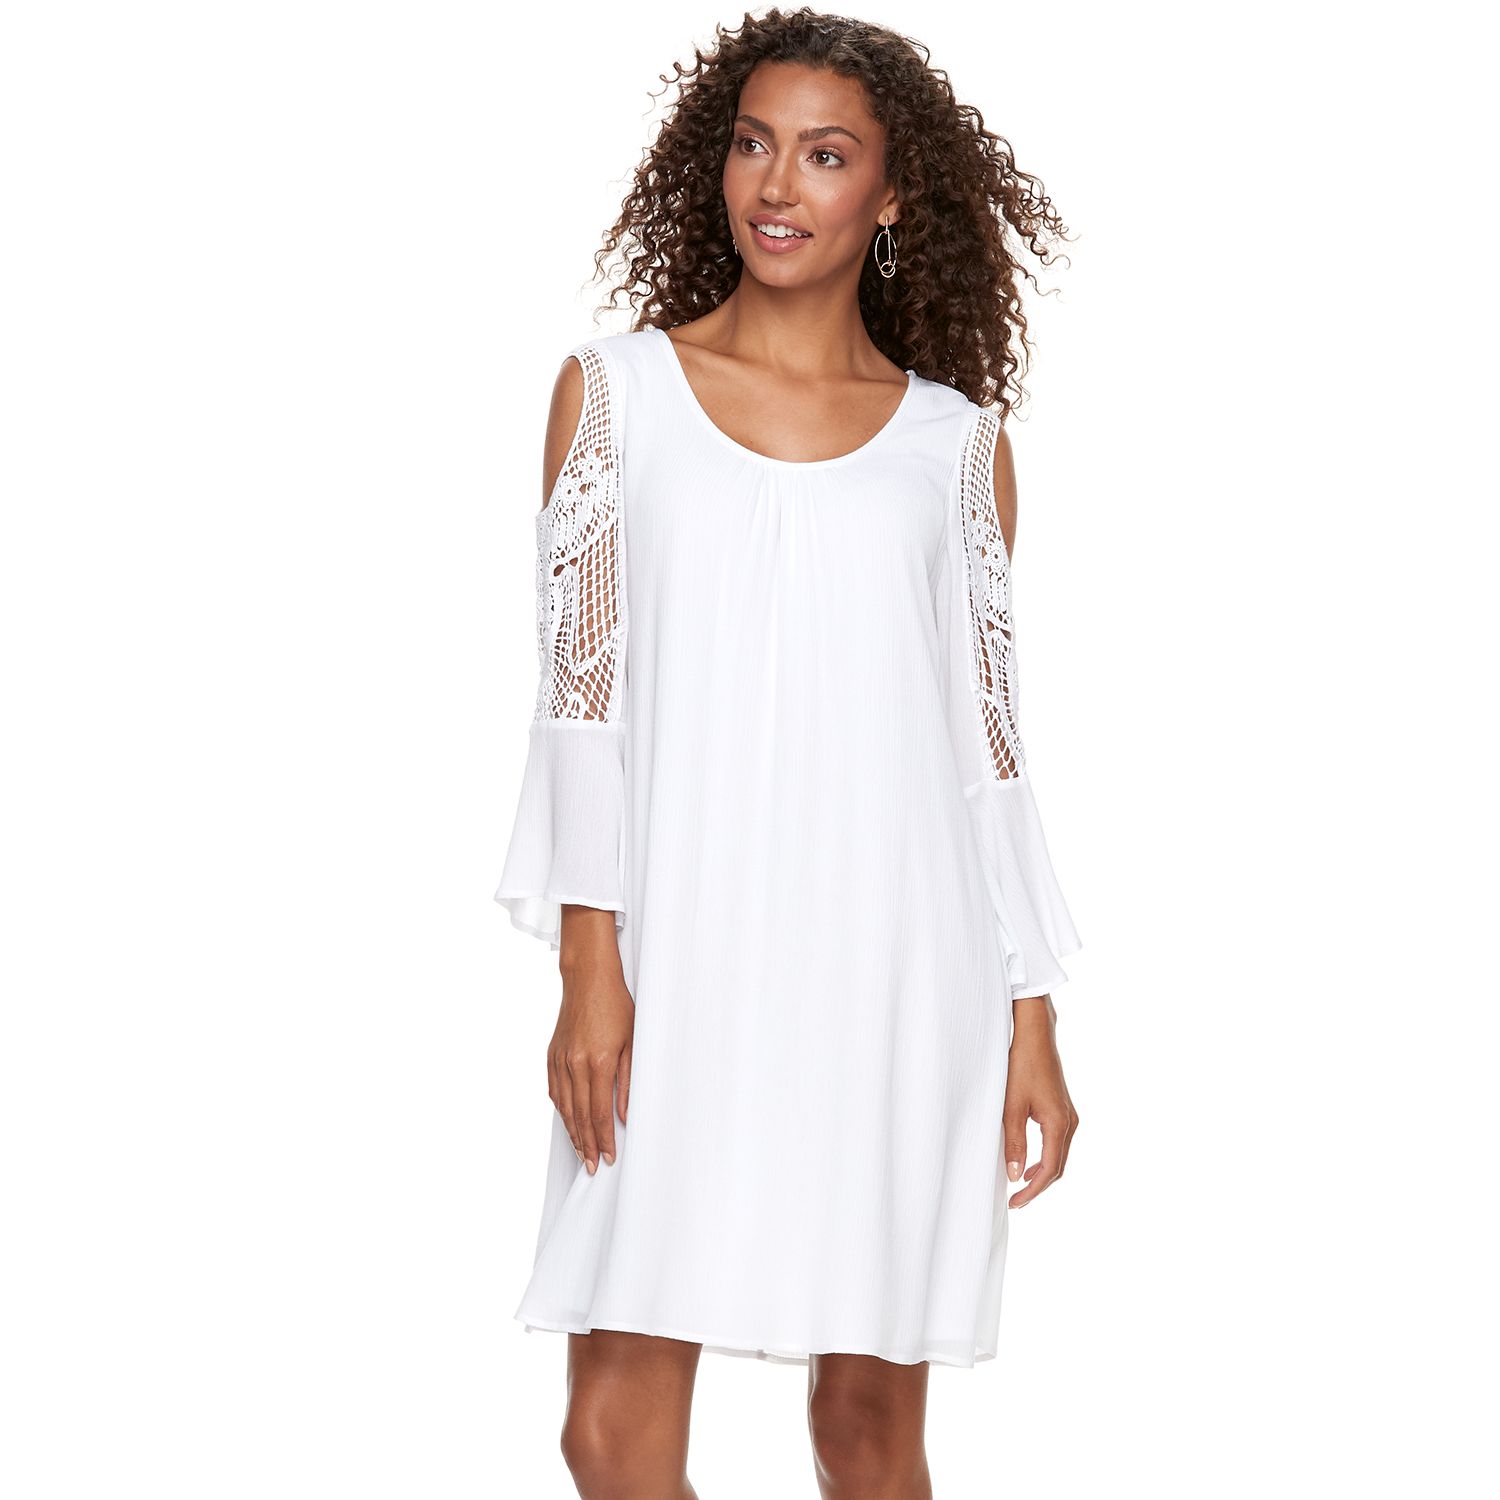 Kohl’s white dresses Dresses Images 2022